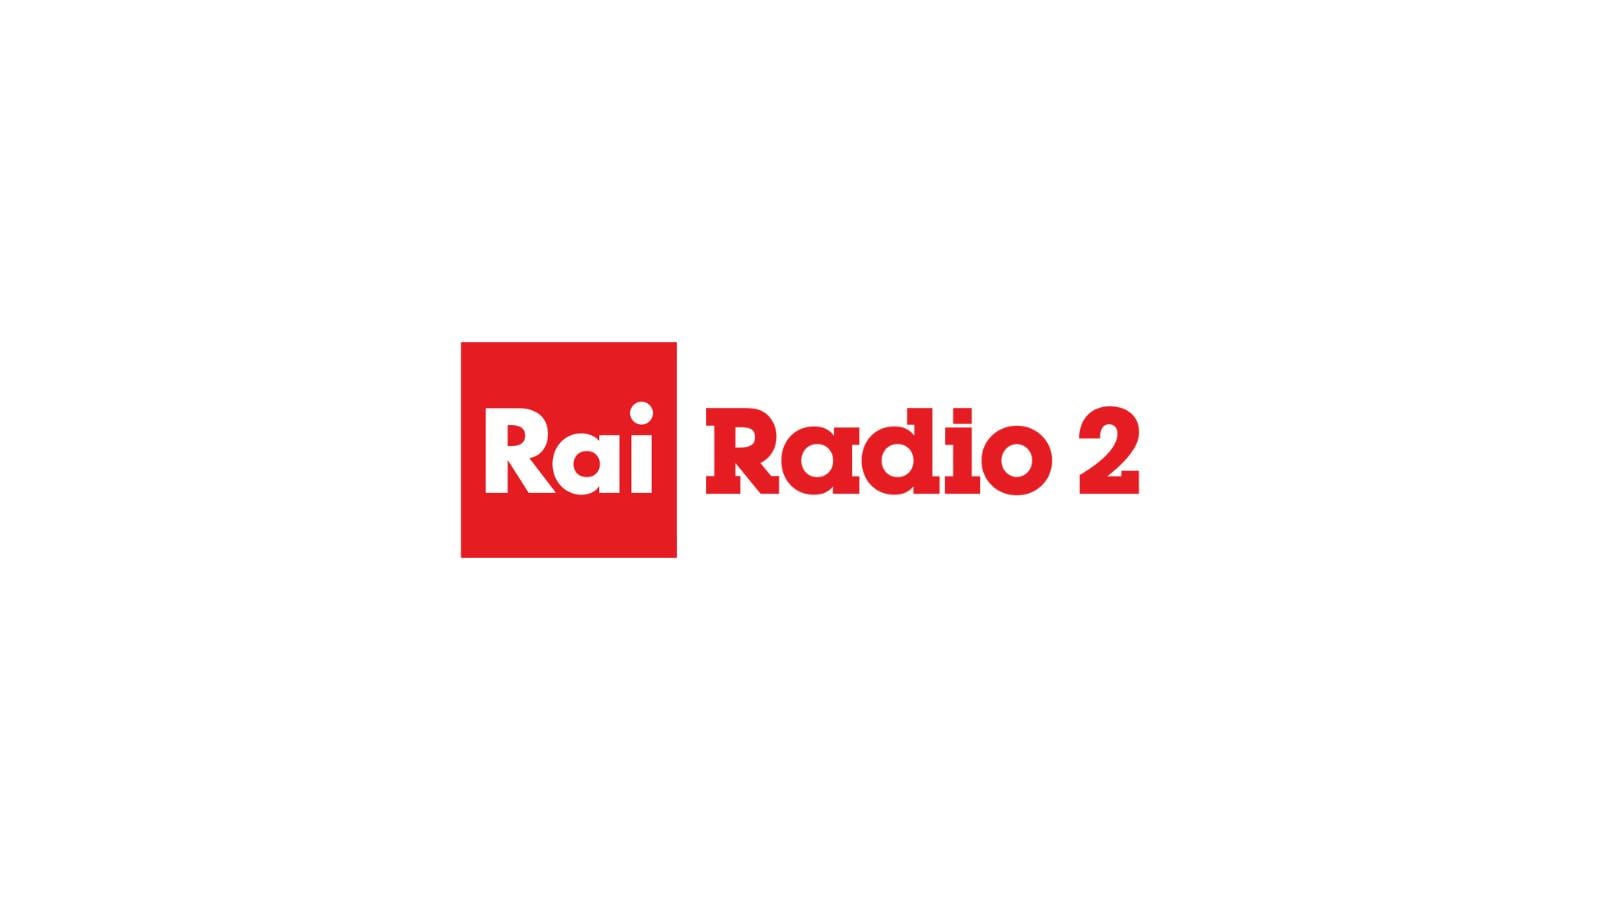 102 2 радио. Rai Radio 2.